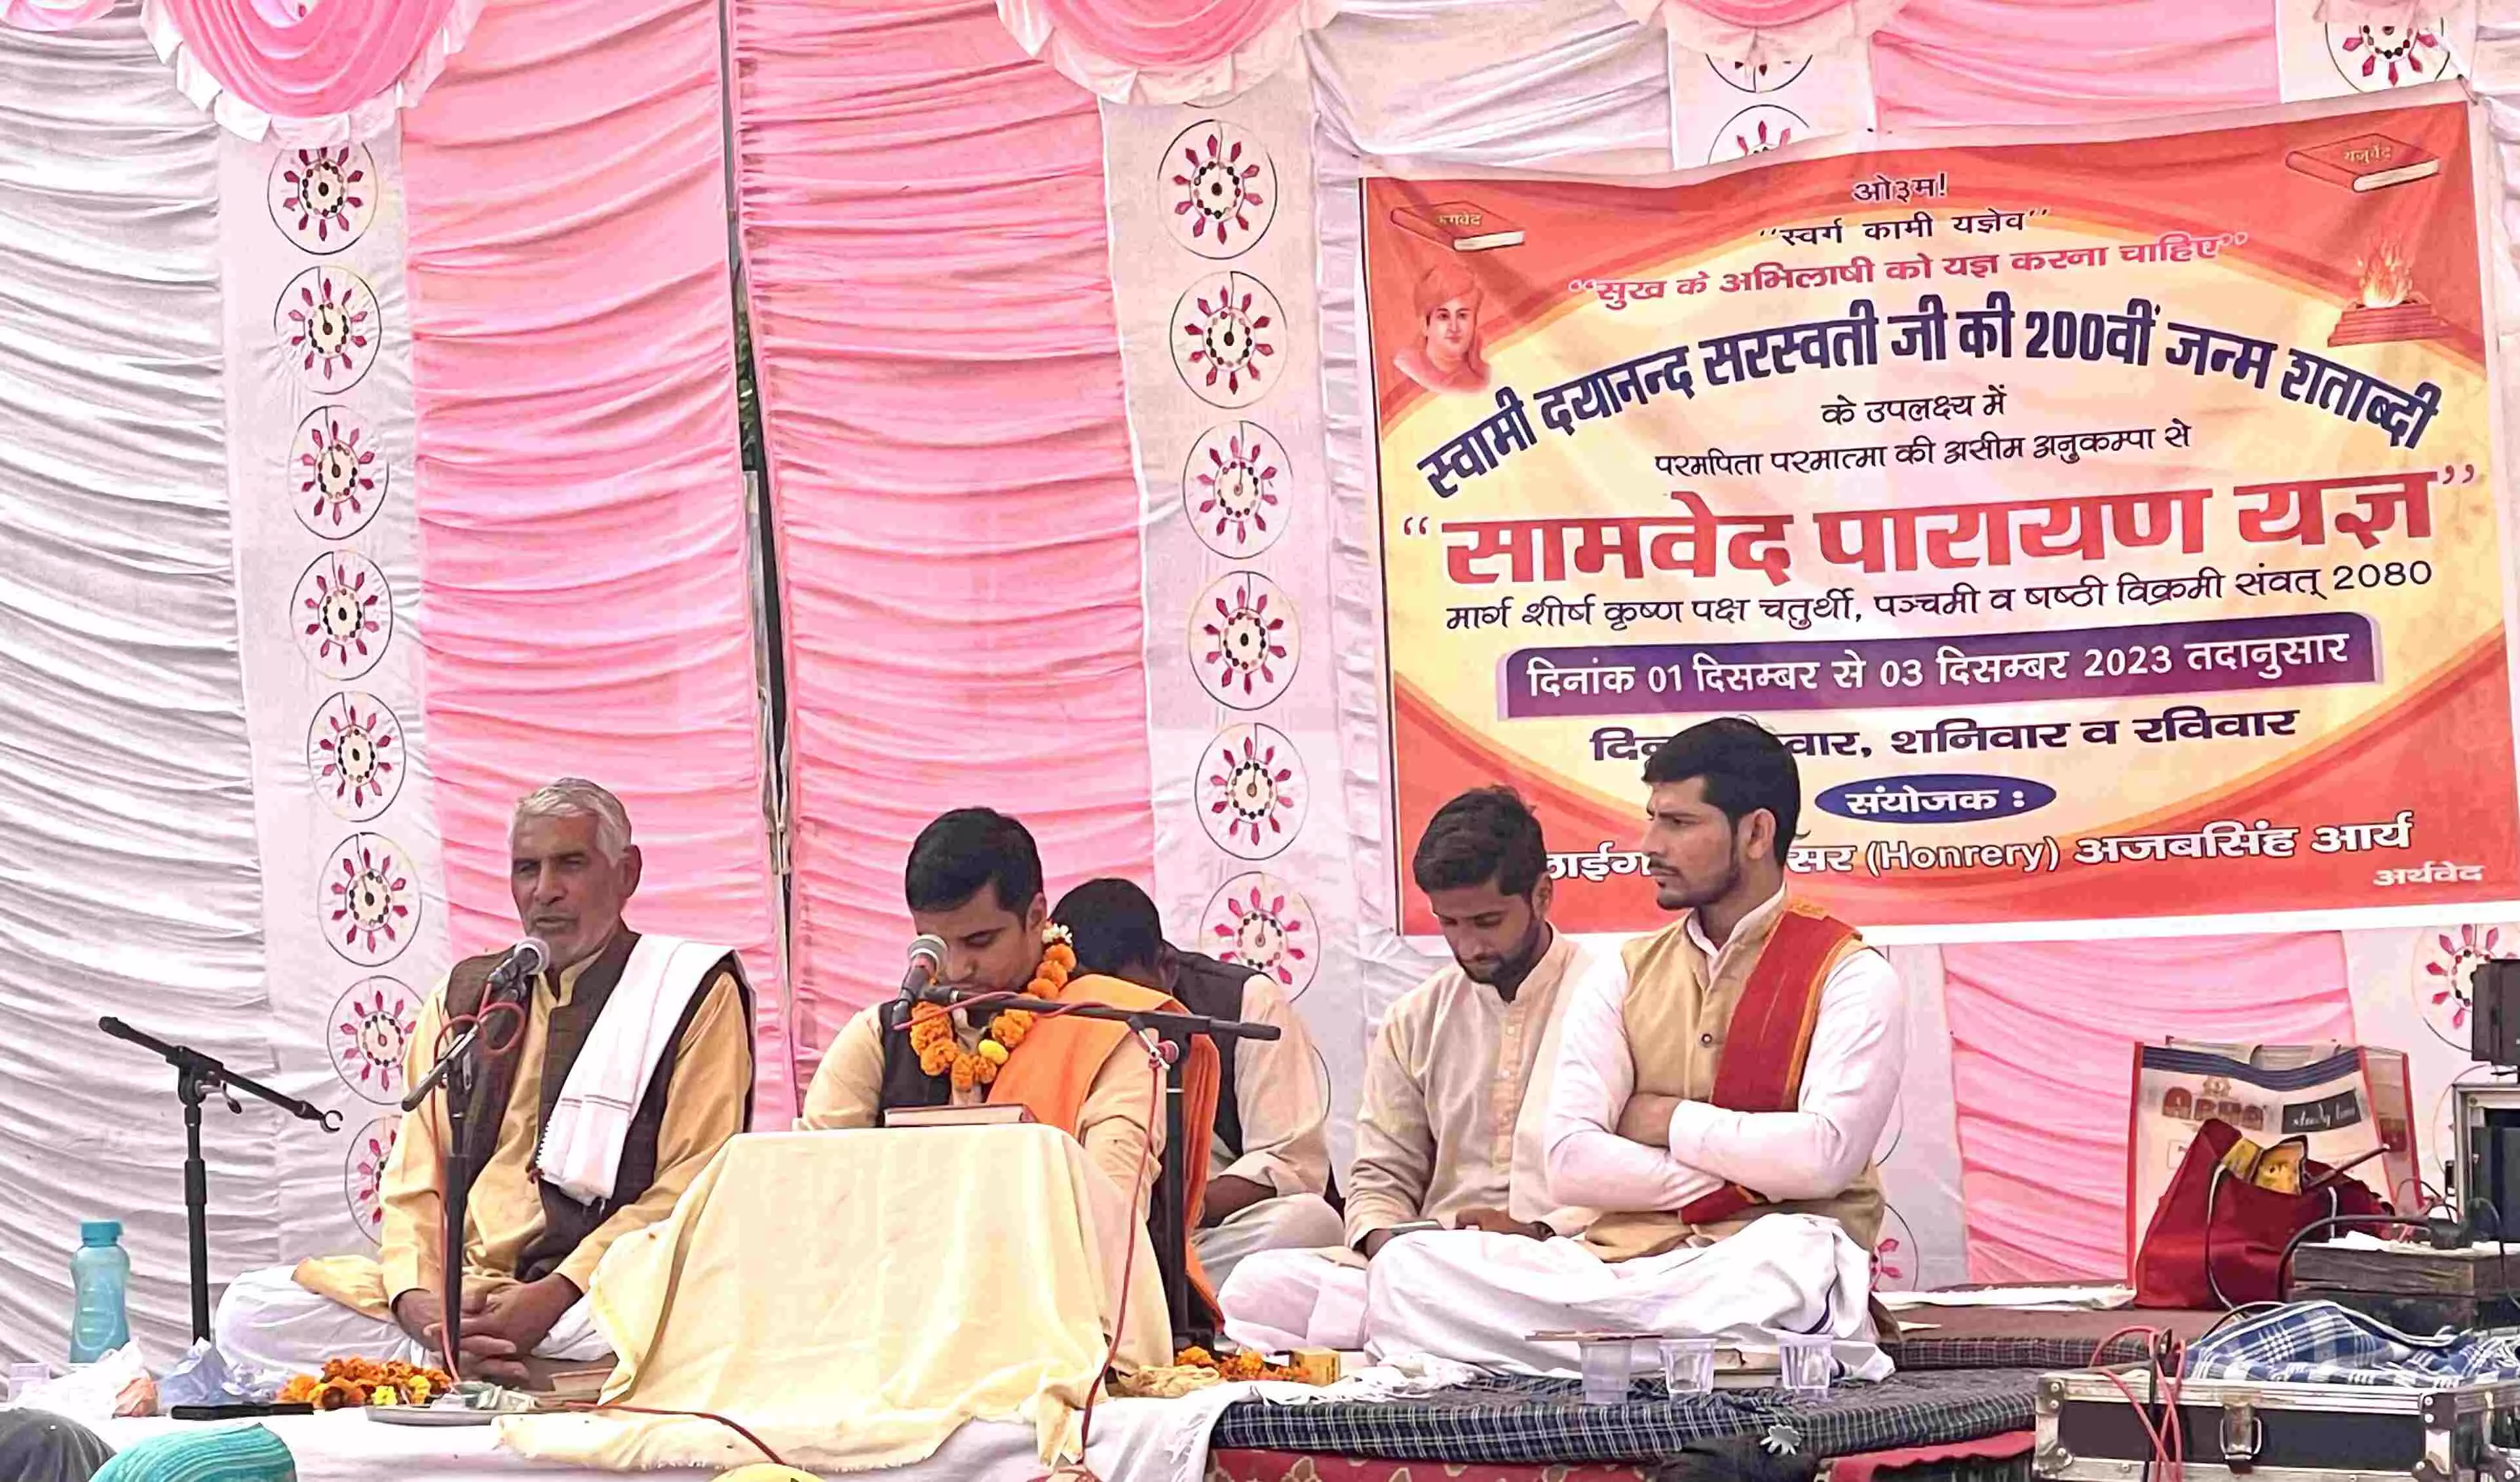 स्वामी दयानन्द सरस्वती जी की 200 वीं जन्म शताब्दी पर सामवेद पारायण यज्ञ का आयोजन